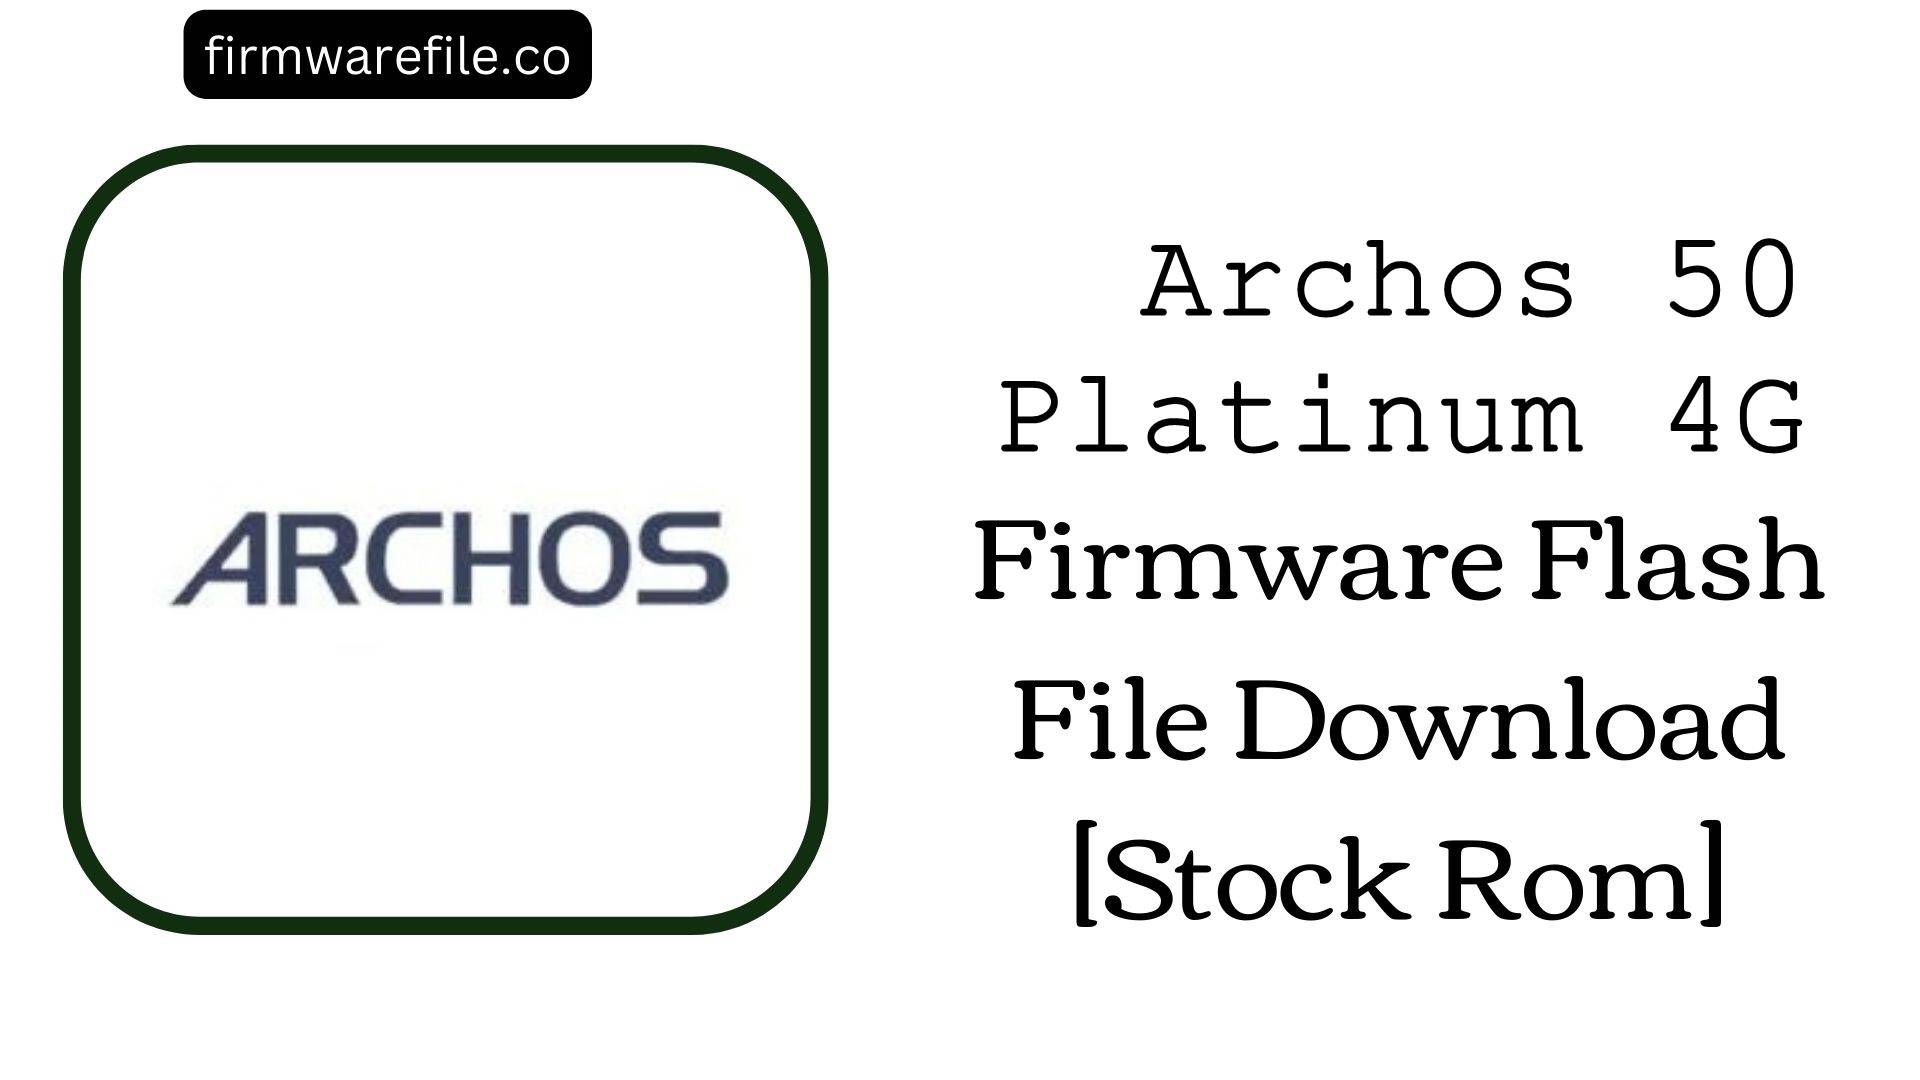 Archos 50 Platinum 4G